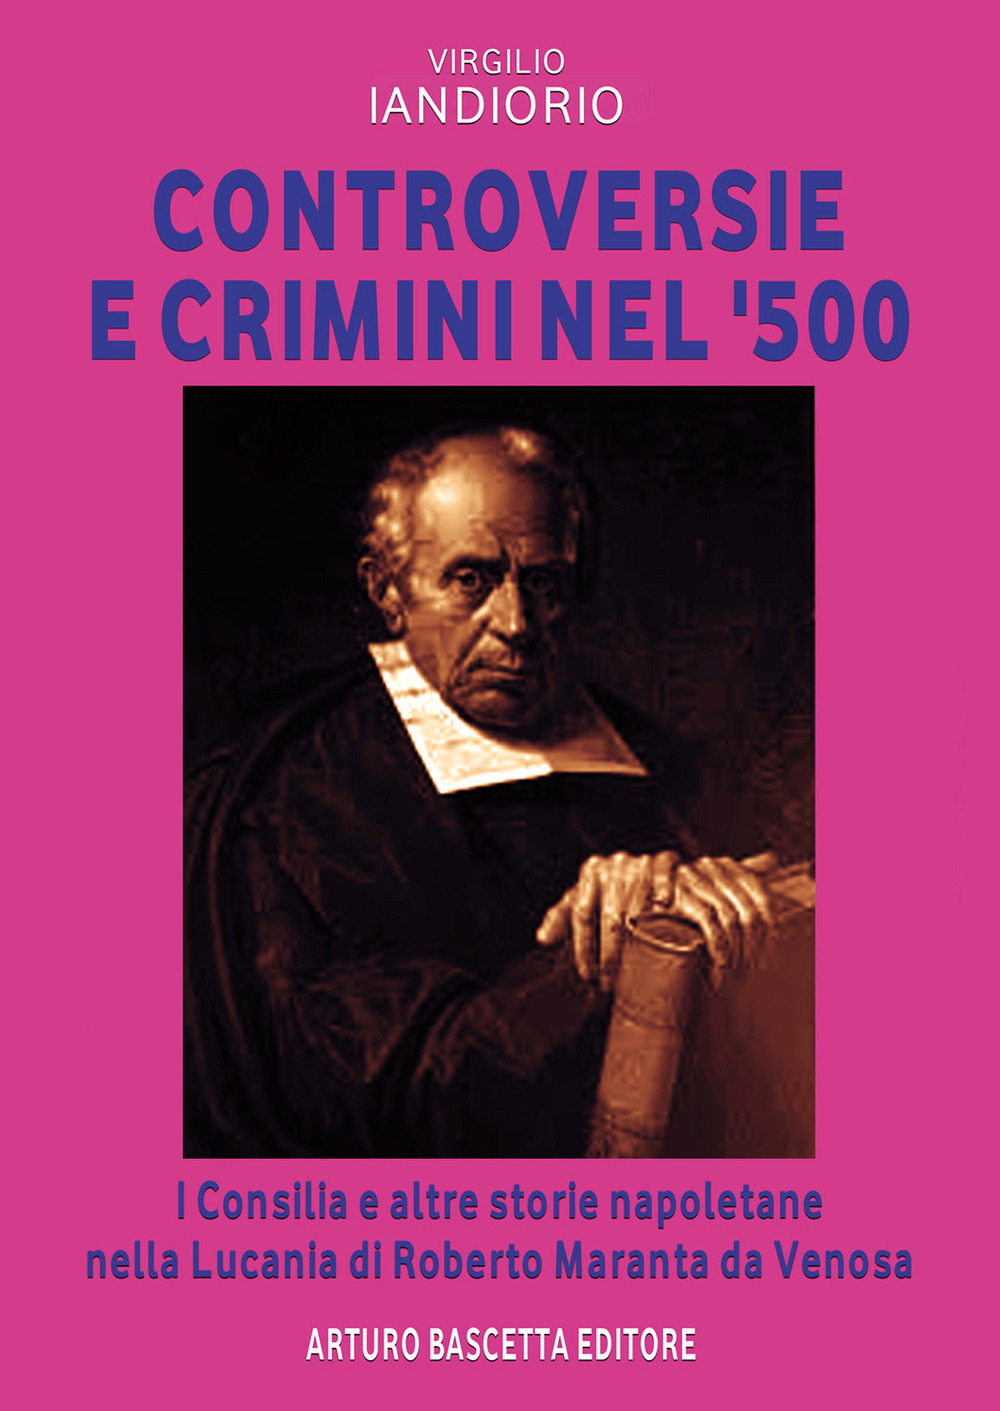 Controversie e crimini nel 1500. I consilia e altre storie napoletane nella Lucania di Roberto Maranta da Venosa